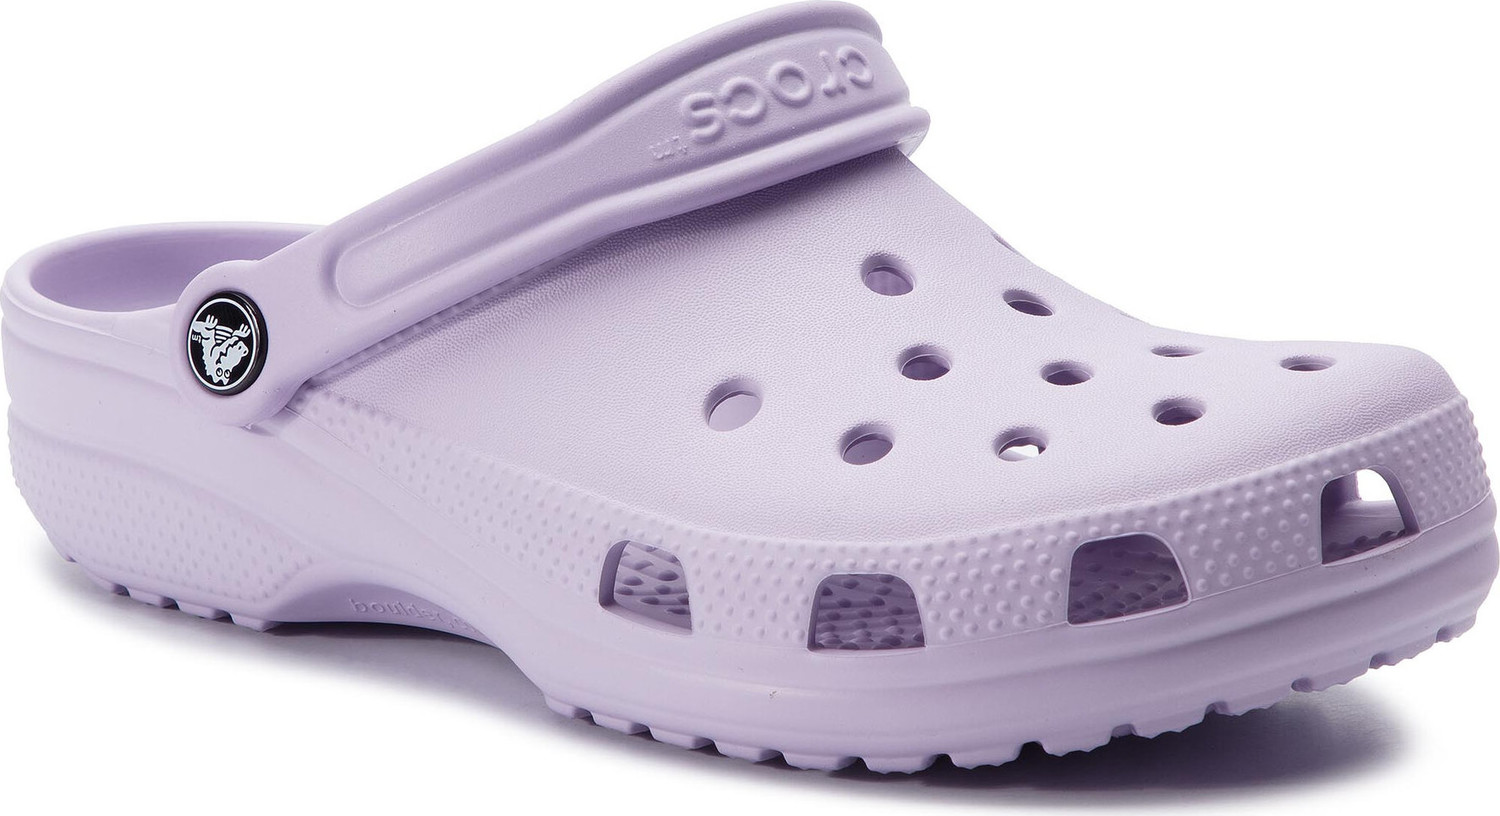 Nazouváky Crocs Classic 10001 Lavender